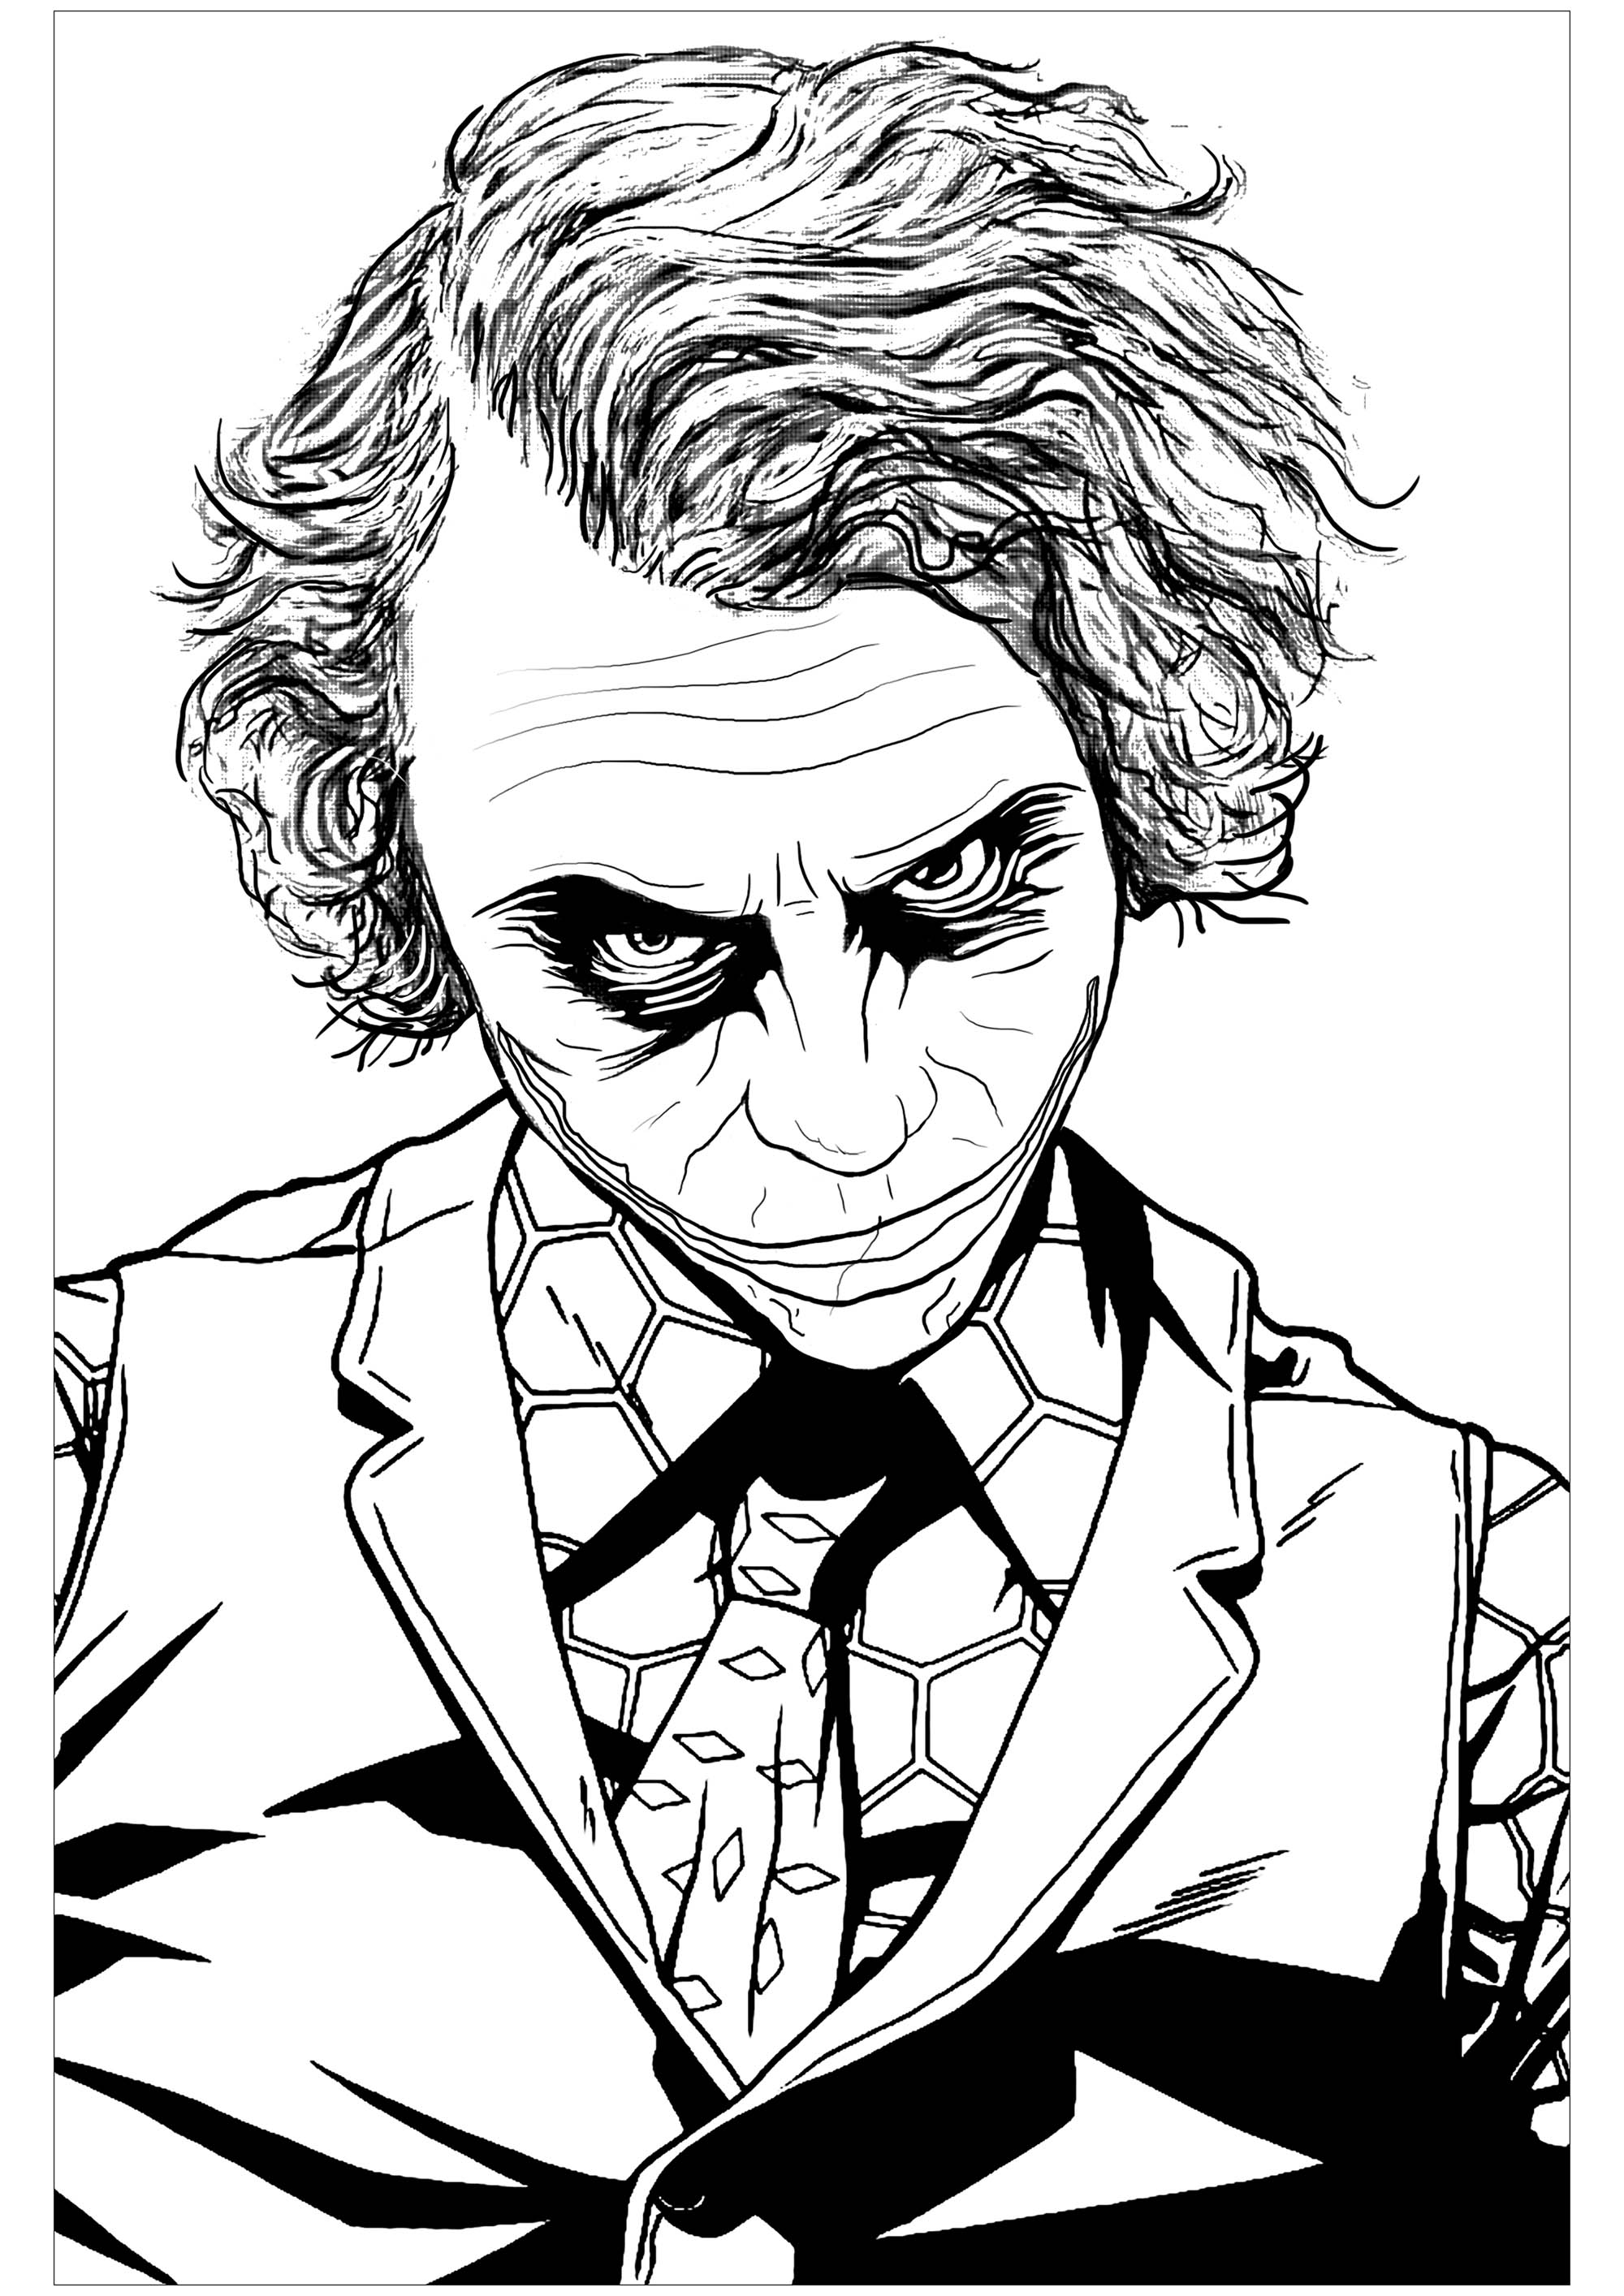 Página para colorear inspirada en el infame villano de Batman El Joker en 'El caballero oscuro' (interpretado por Heath Ledger)